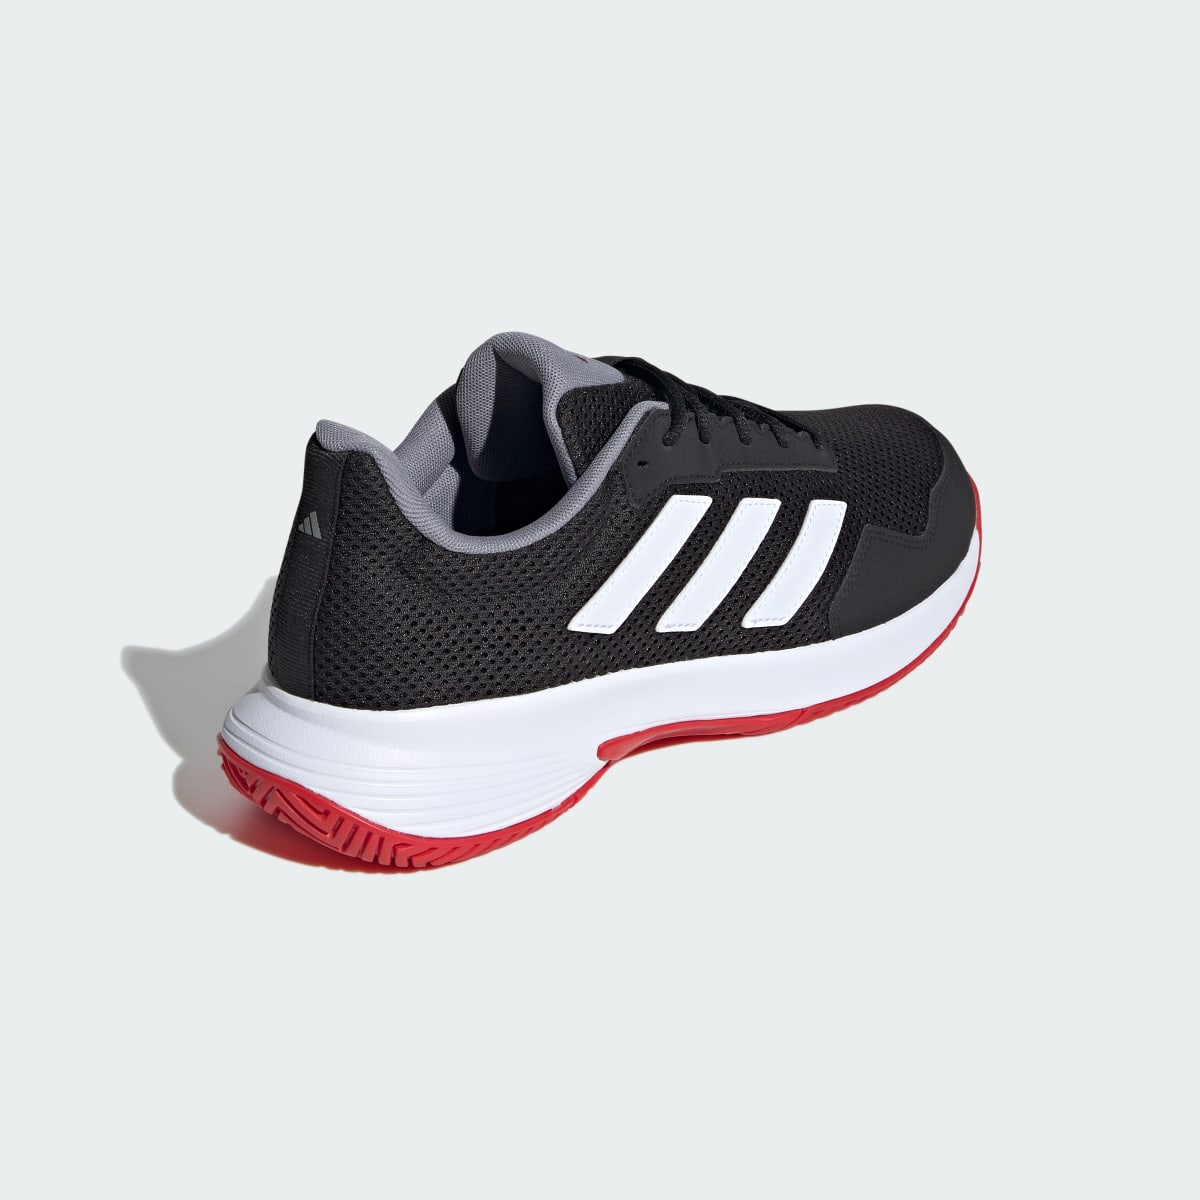 Adidas Court Spec 2 Tennis Shoes. 9